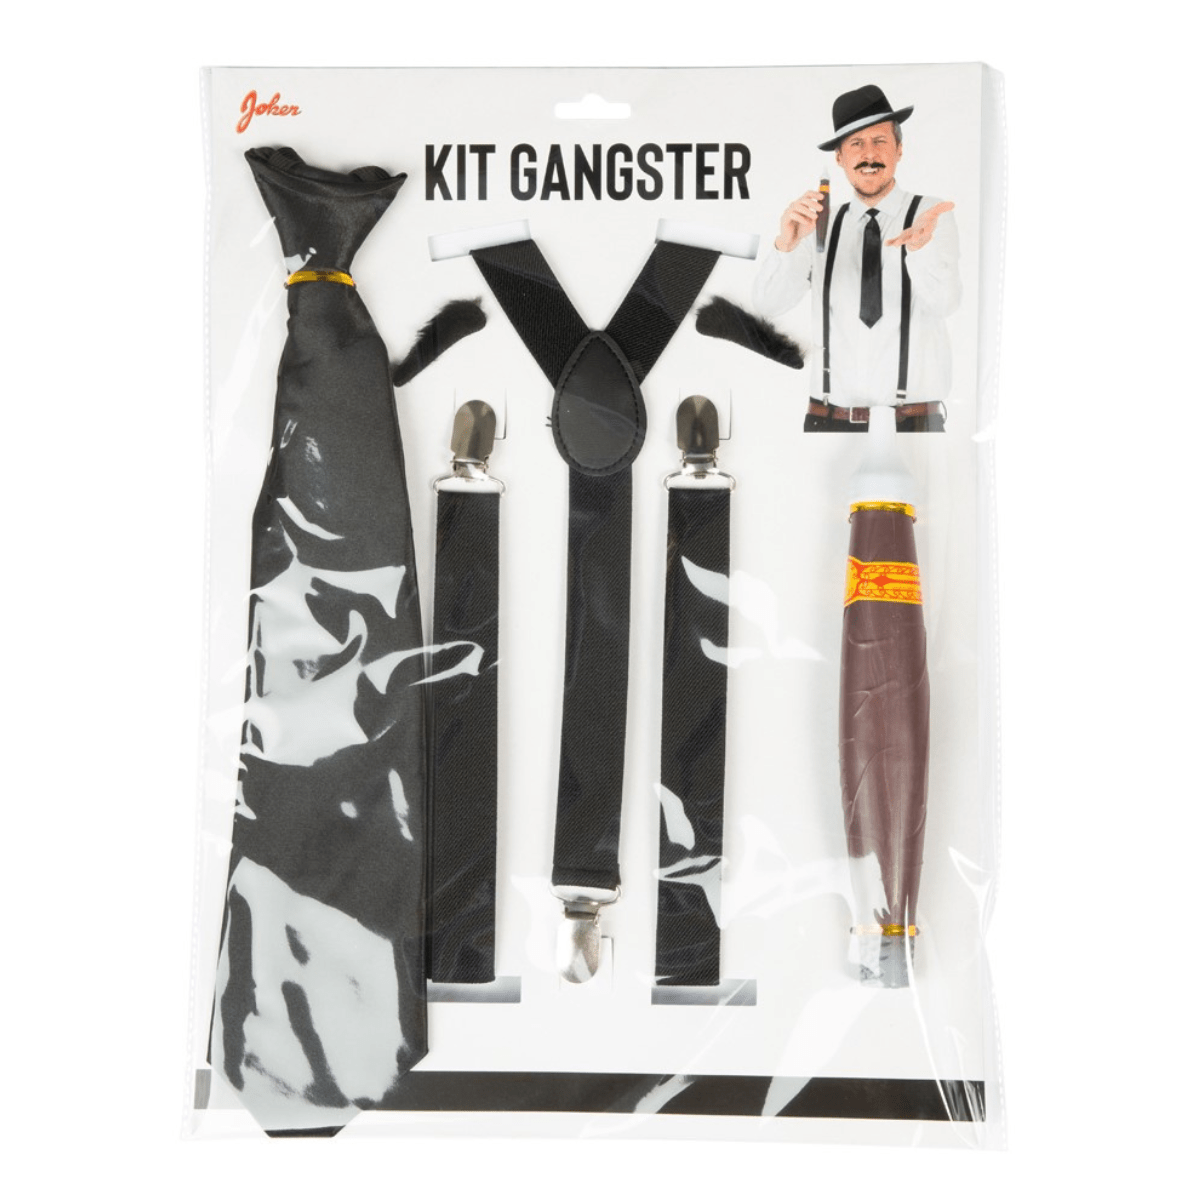 Kit Gangster